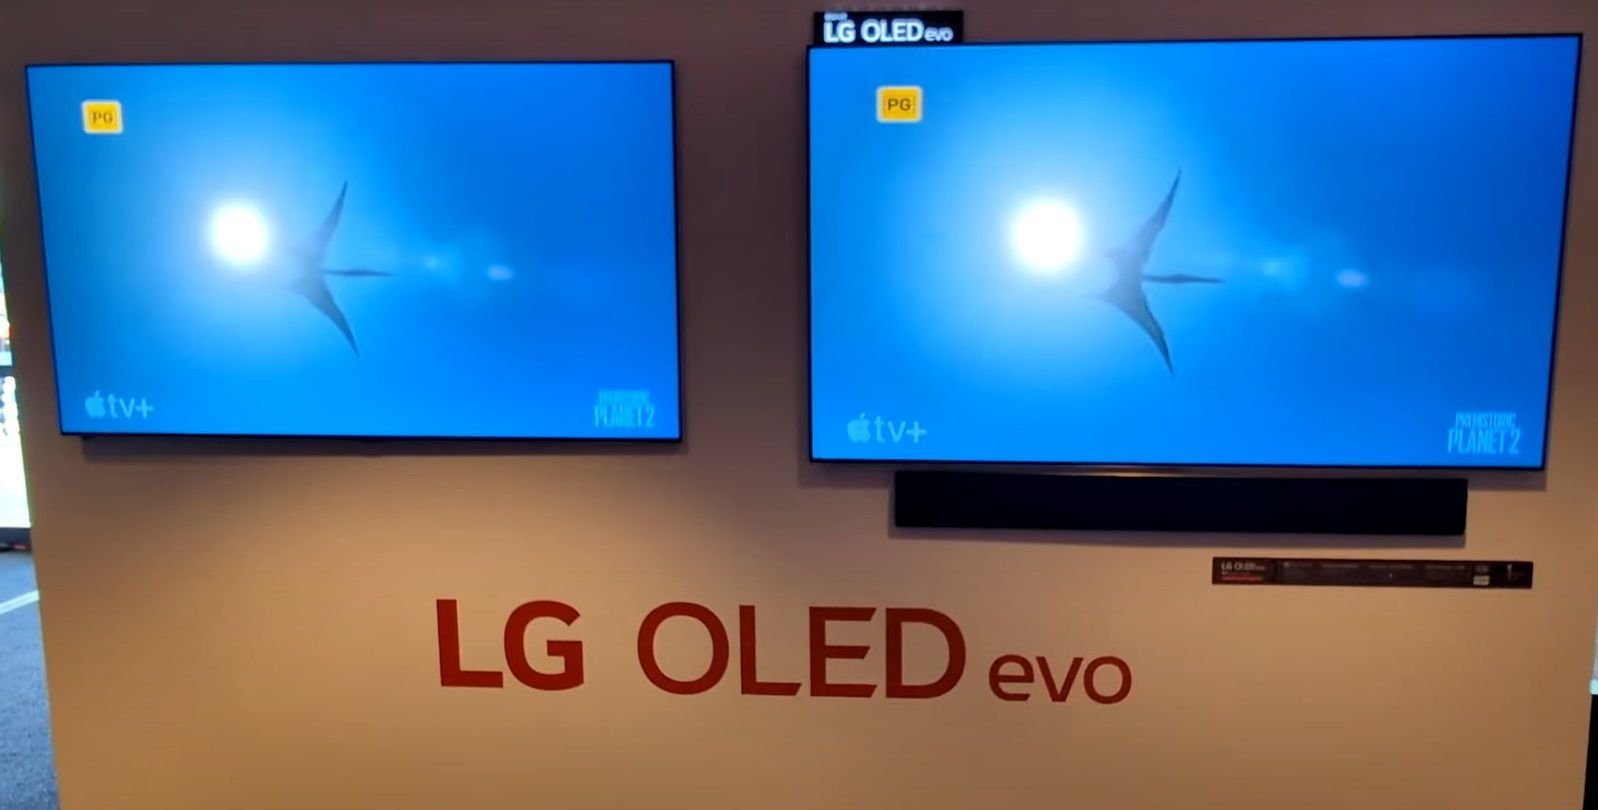 La nueva LG OLED G4 rompe todos los moldes: brillo descomunal, mejoras en color y un procesador con IA